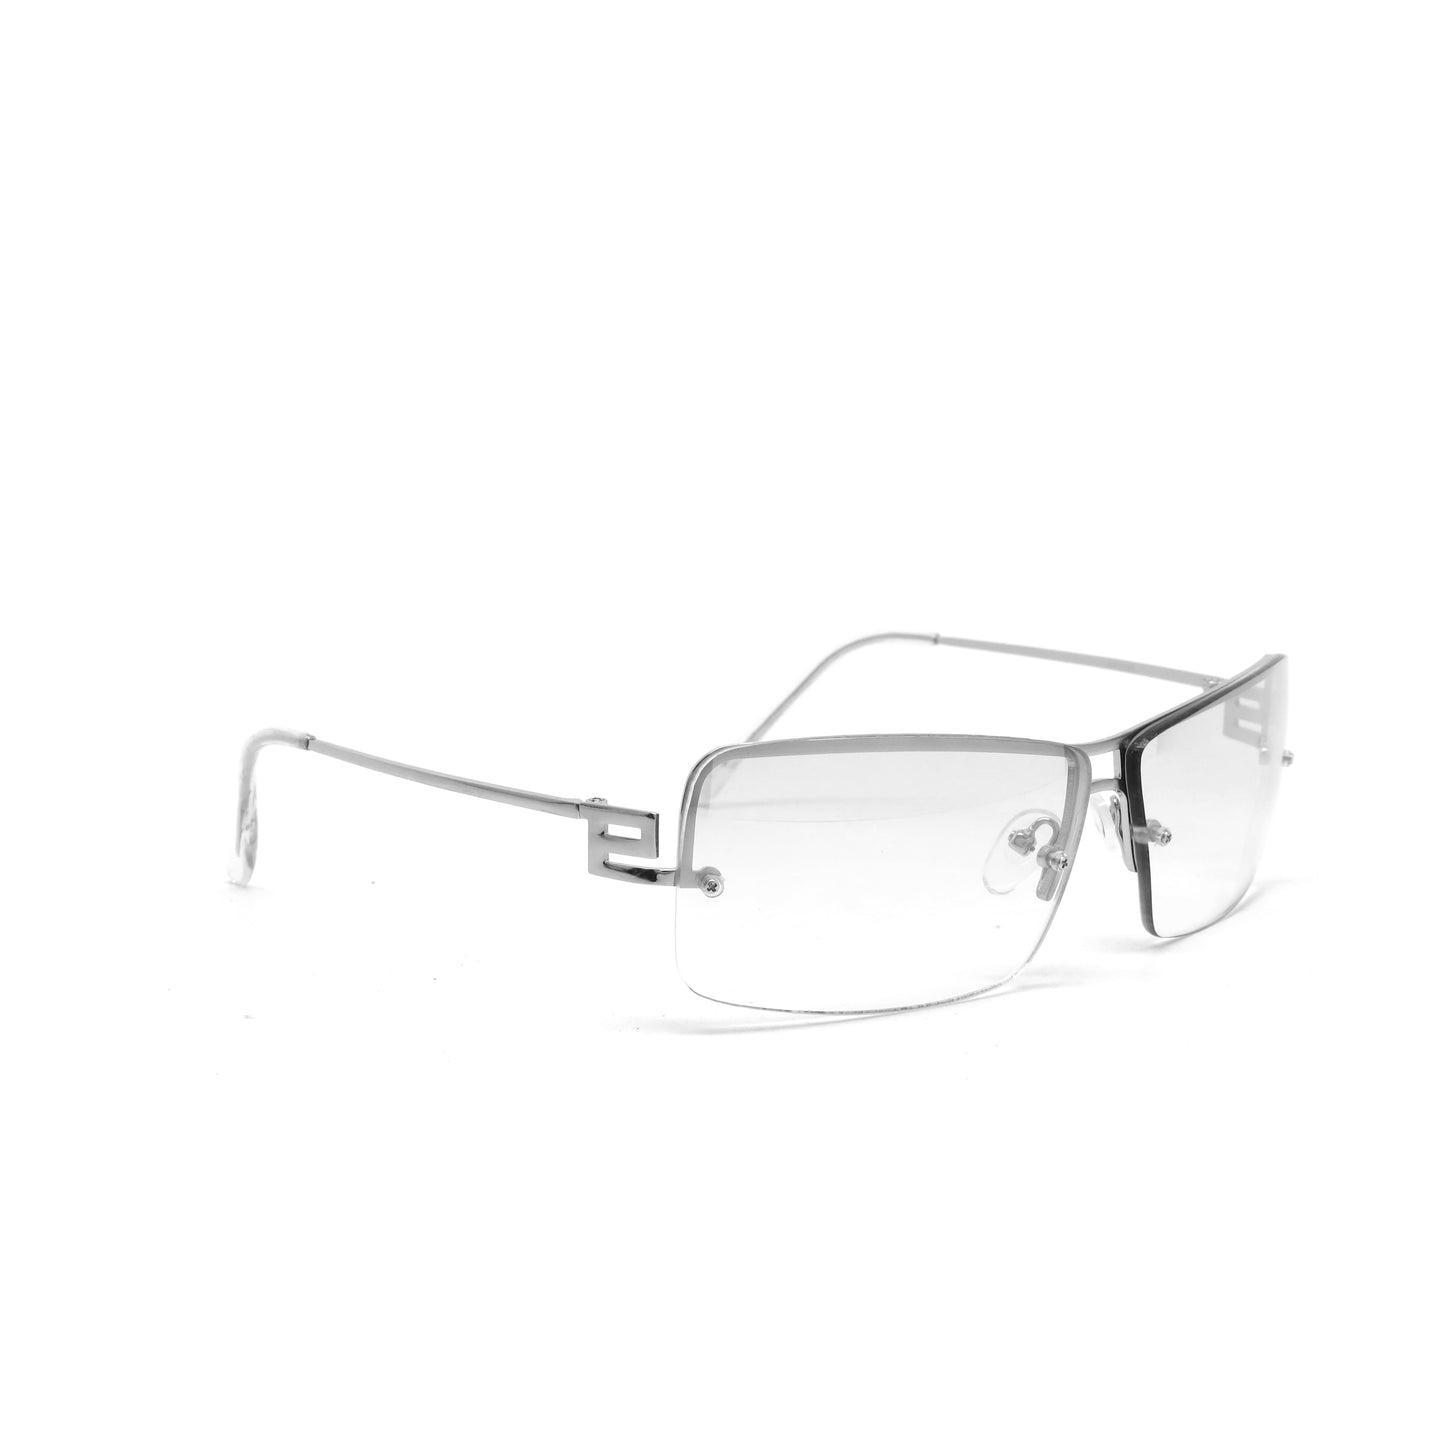 Deluxe Late 90s Vintage Frameless Metal Hinge Visor Sunglasses - Transparent